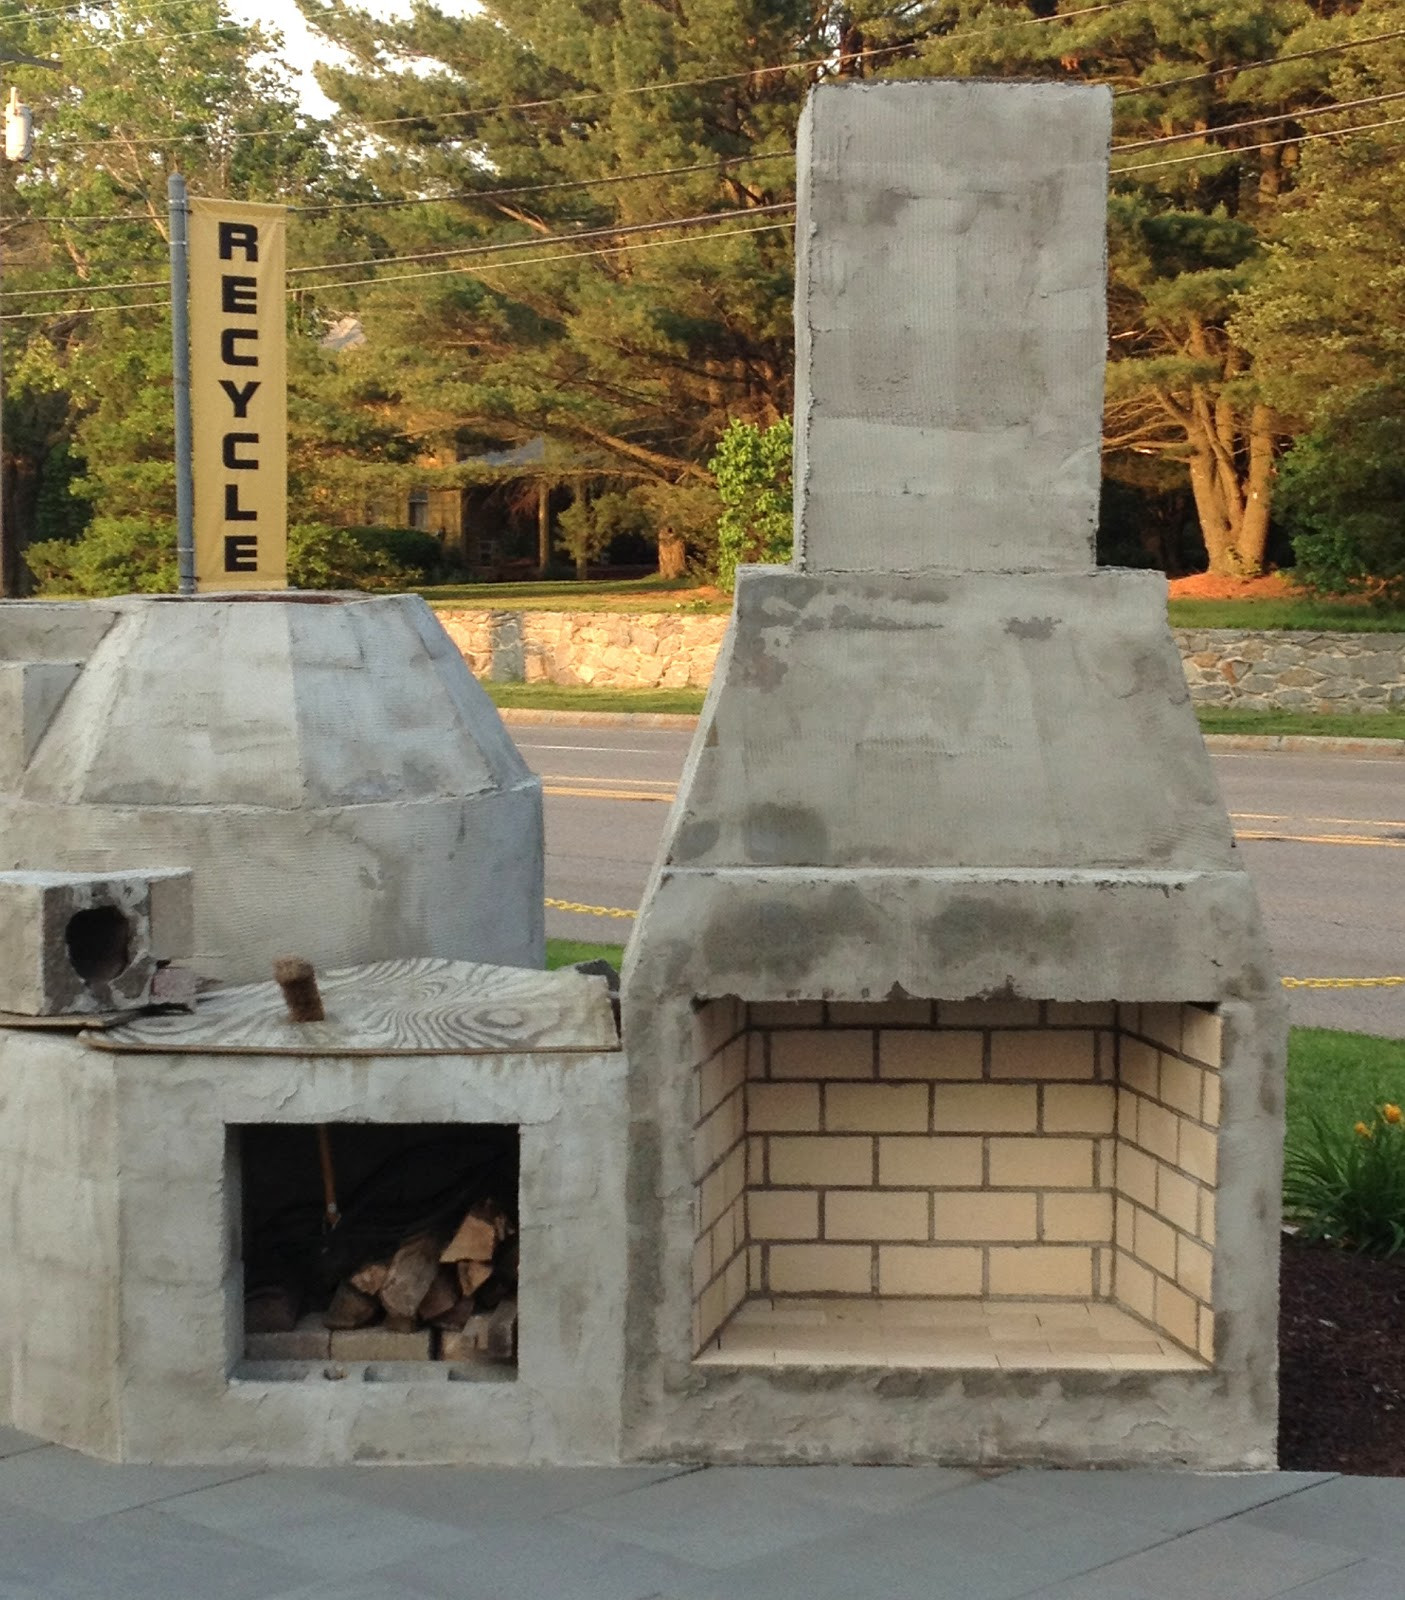 DIY Outdoor Gas Fireplace Kits
 Fireplace DIY Prefab Outdoor Fireplace For Your Outdoor